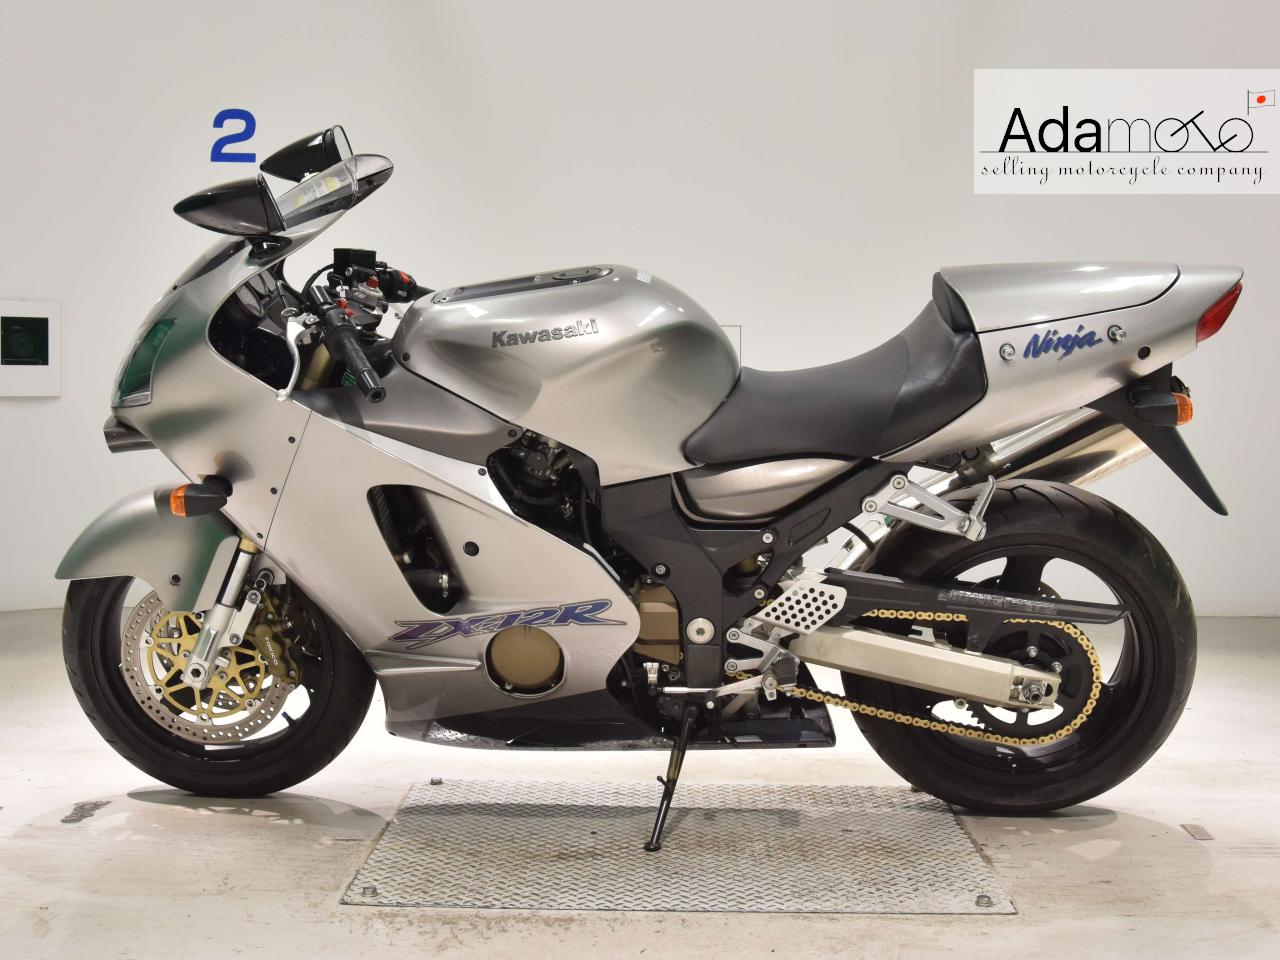 Kawasaki ZX 12R - Adamoto - Motorcycles from Japan